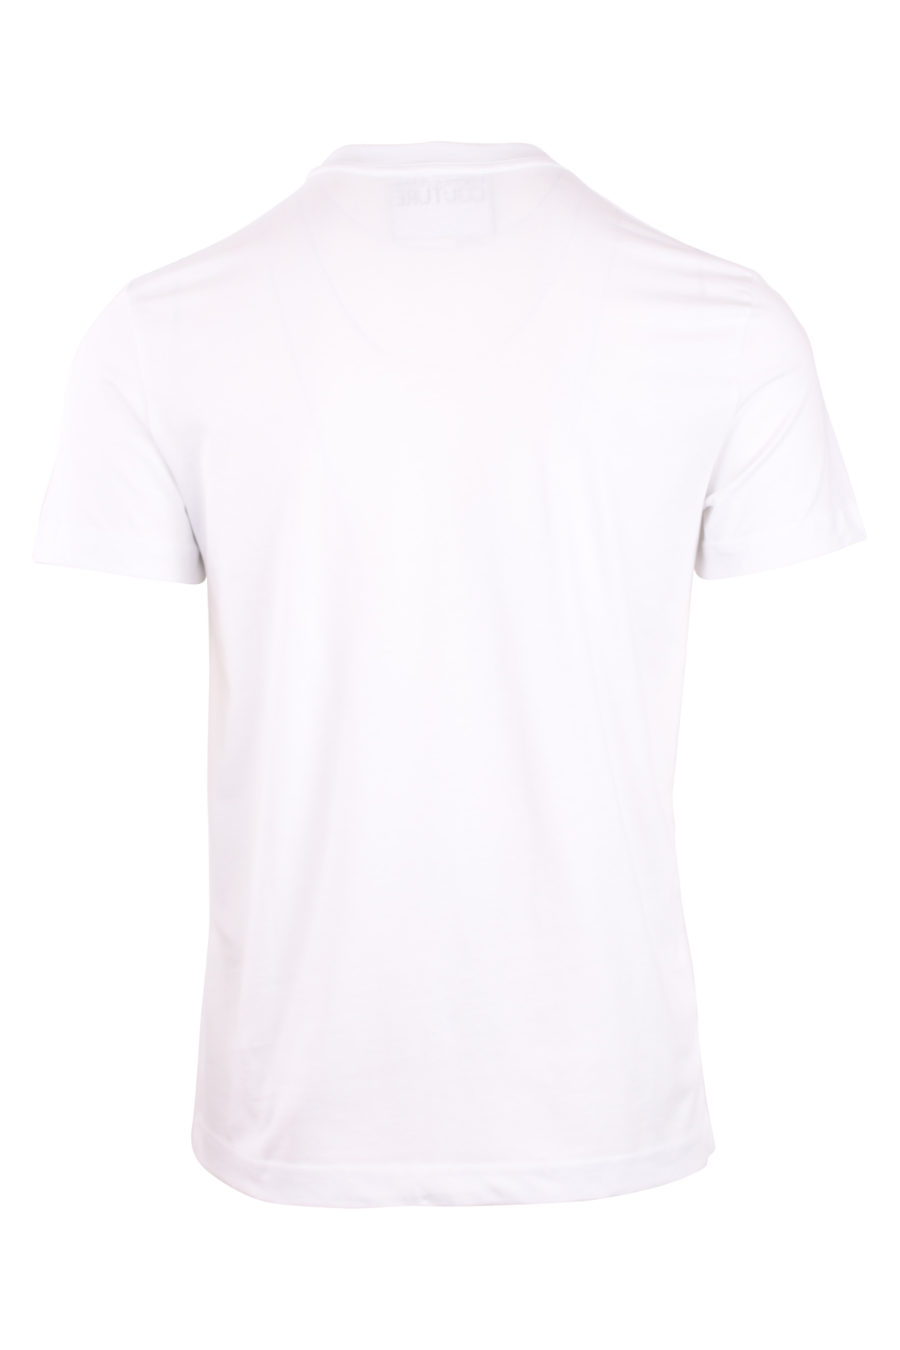 Weißes T-Shirt mit kleinem Dreieckslogo - IMG 0754